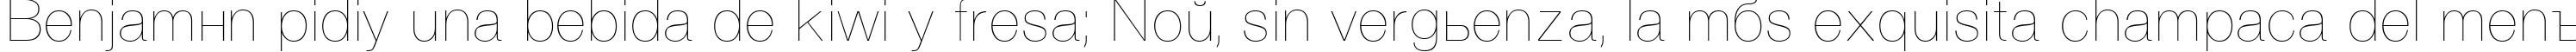 Пример написания шрифтом Vanta Thin Plain:001.001 текста на испанском